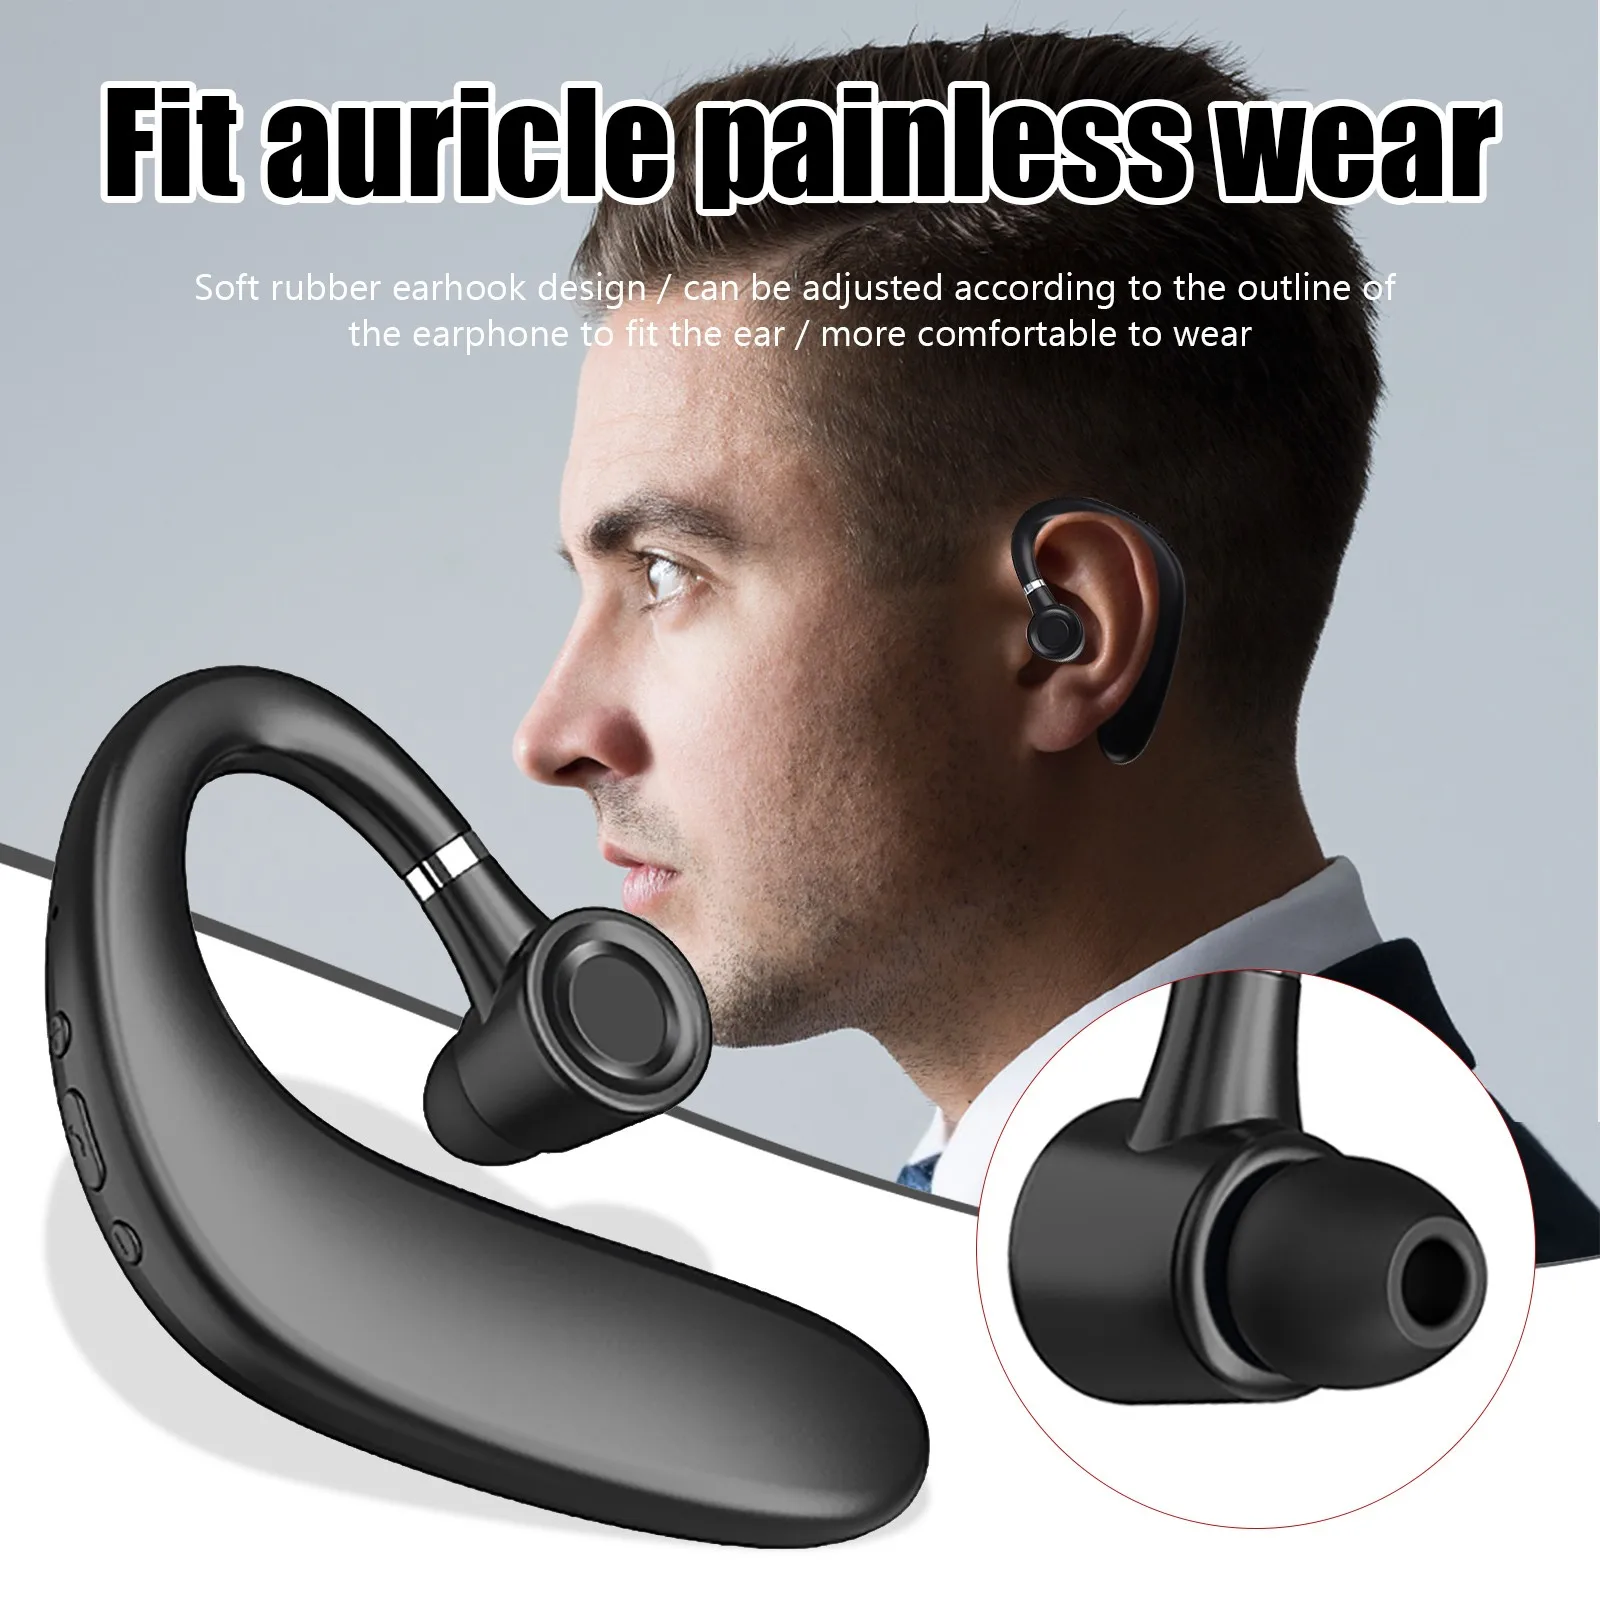 Total 20 Horas Jugar Auriculares Bluetooth LXT Auriculares Inalámbricos 5,0 de fácil emparejamiento Mini Auriculares Bluetooth en la Oreja a Prueba de Sudor Deportes audífonos con micrófono 